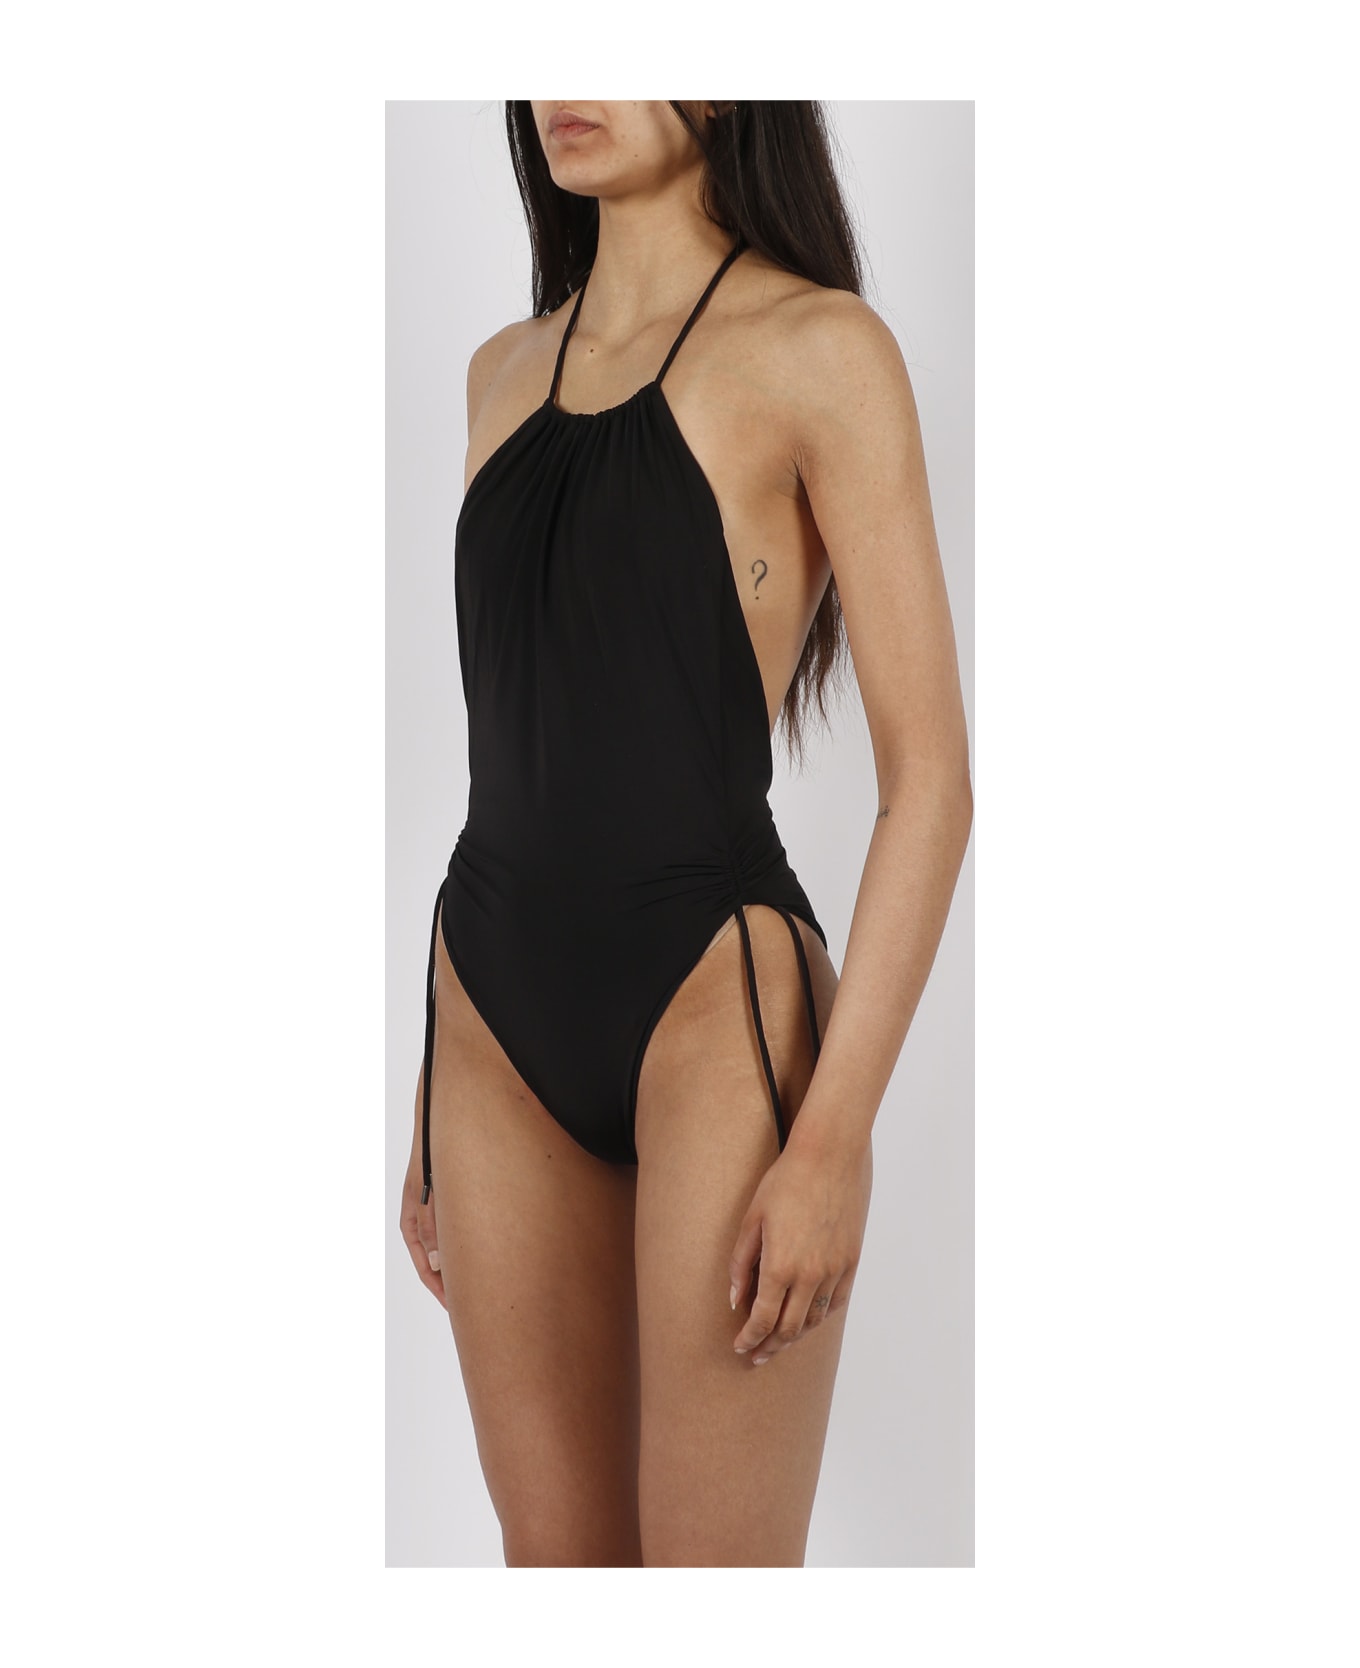 Saint Laurent Halterneck Swimsuit - Black